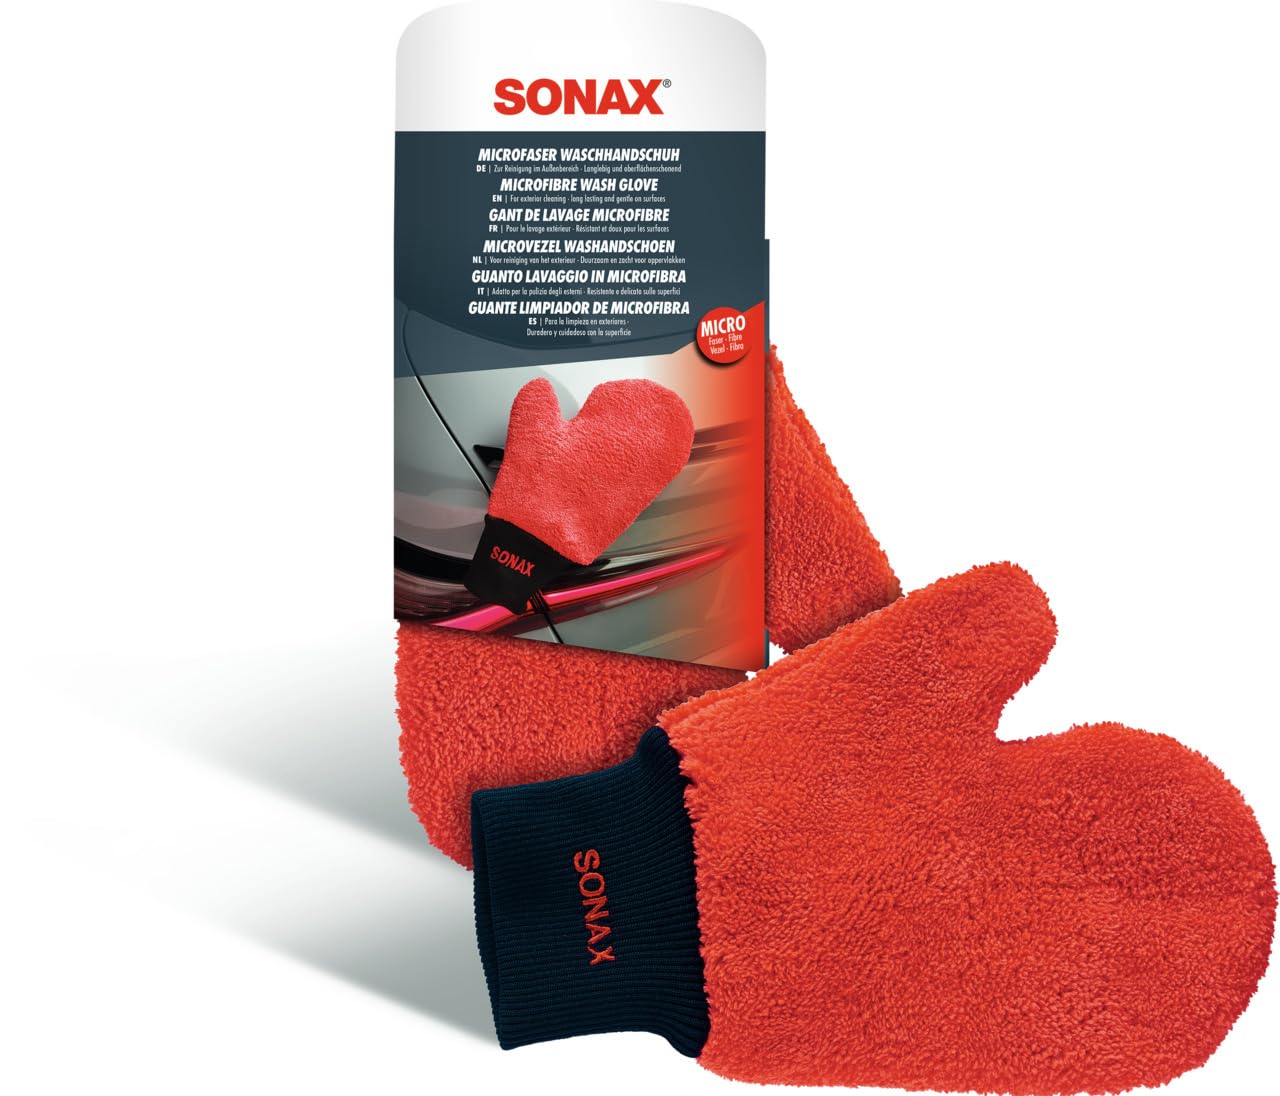 SONAX Microfaser WaschHandschuh (1 Stück) bequemer Handschuh mit maximalem Oberflächenschutz, schonende Reinigung aller Lack-, Glas- und Kunststoffoberflächen | Art-Nr. 04282000 von SONAX